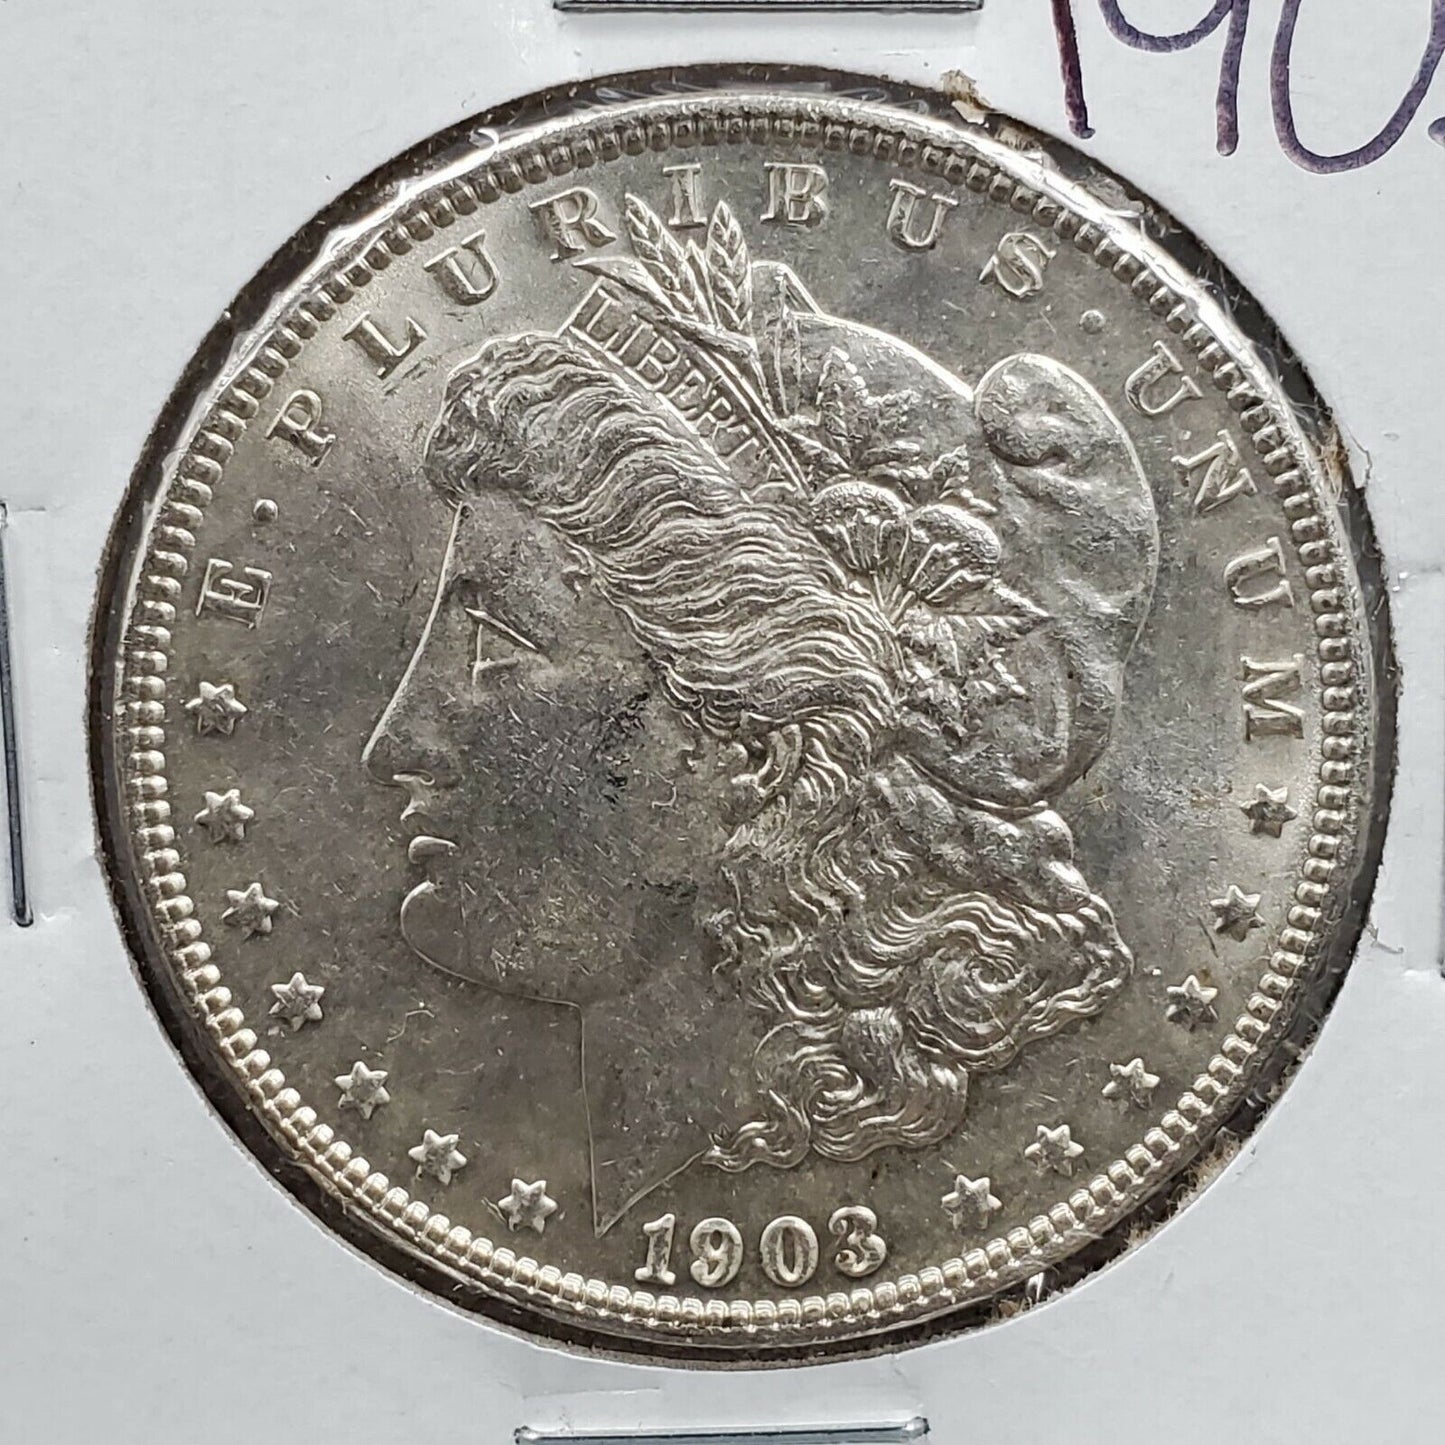 1903 P Morgan Silver Eagle Dollar Coin BU Uncirculated Some Toning Nice Coin